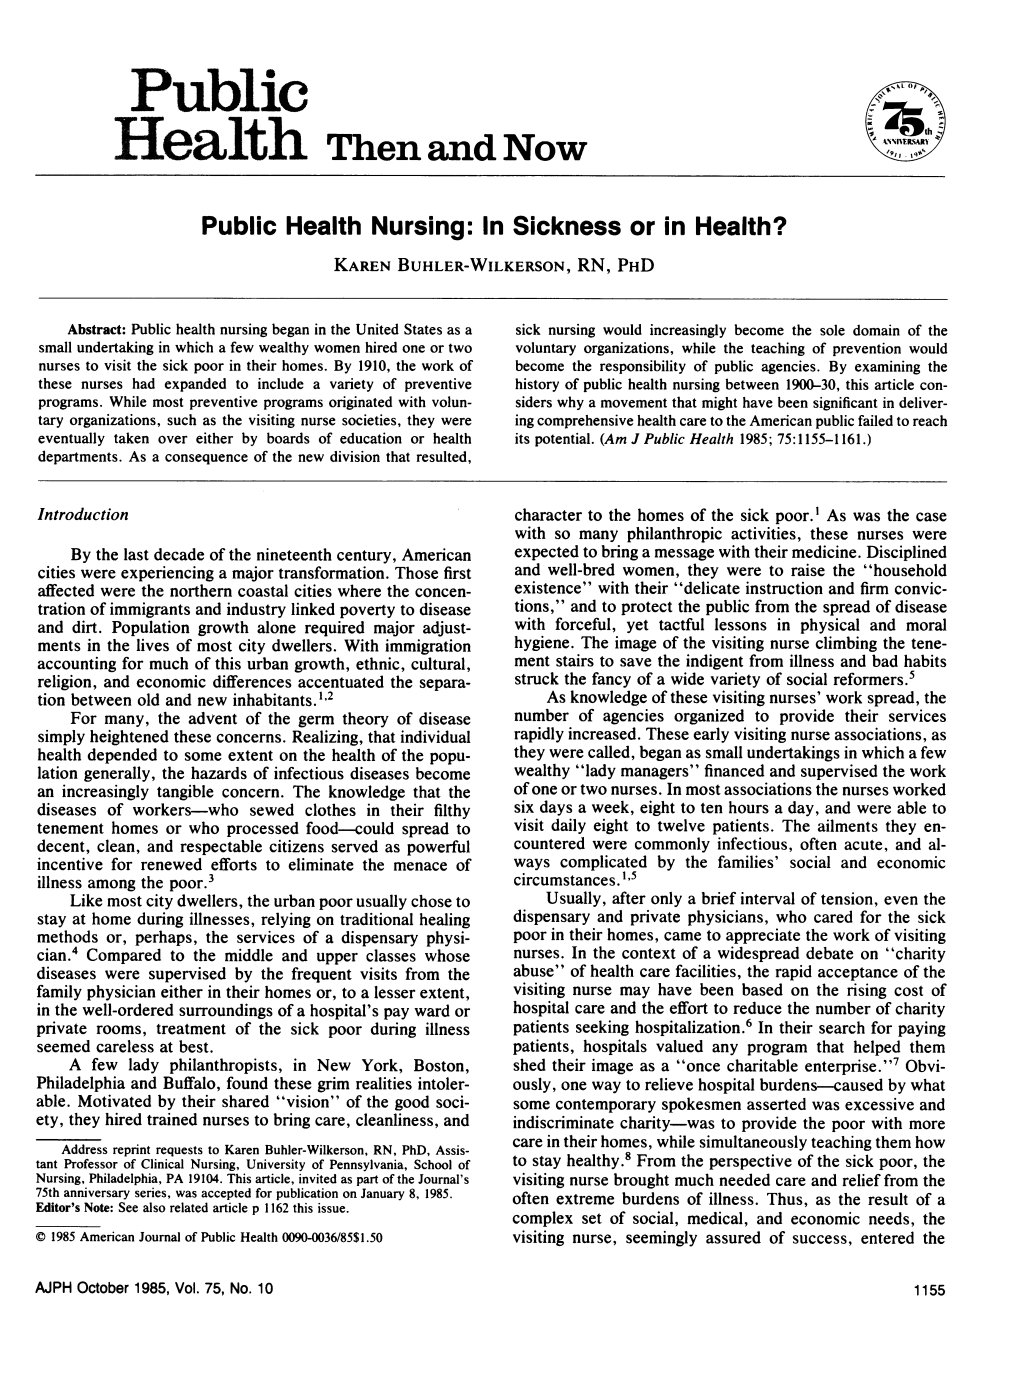 Public Health Nursing: in Sickness Or in Health? KAREN BUHLER-WILKERSON, RN, PHD